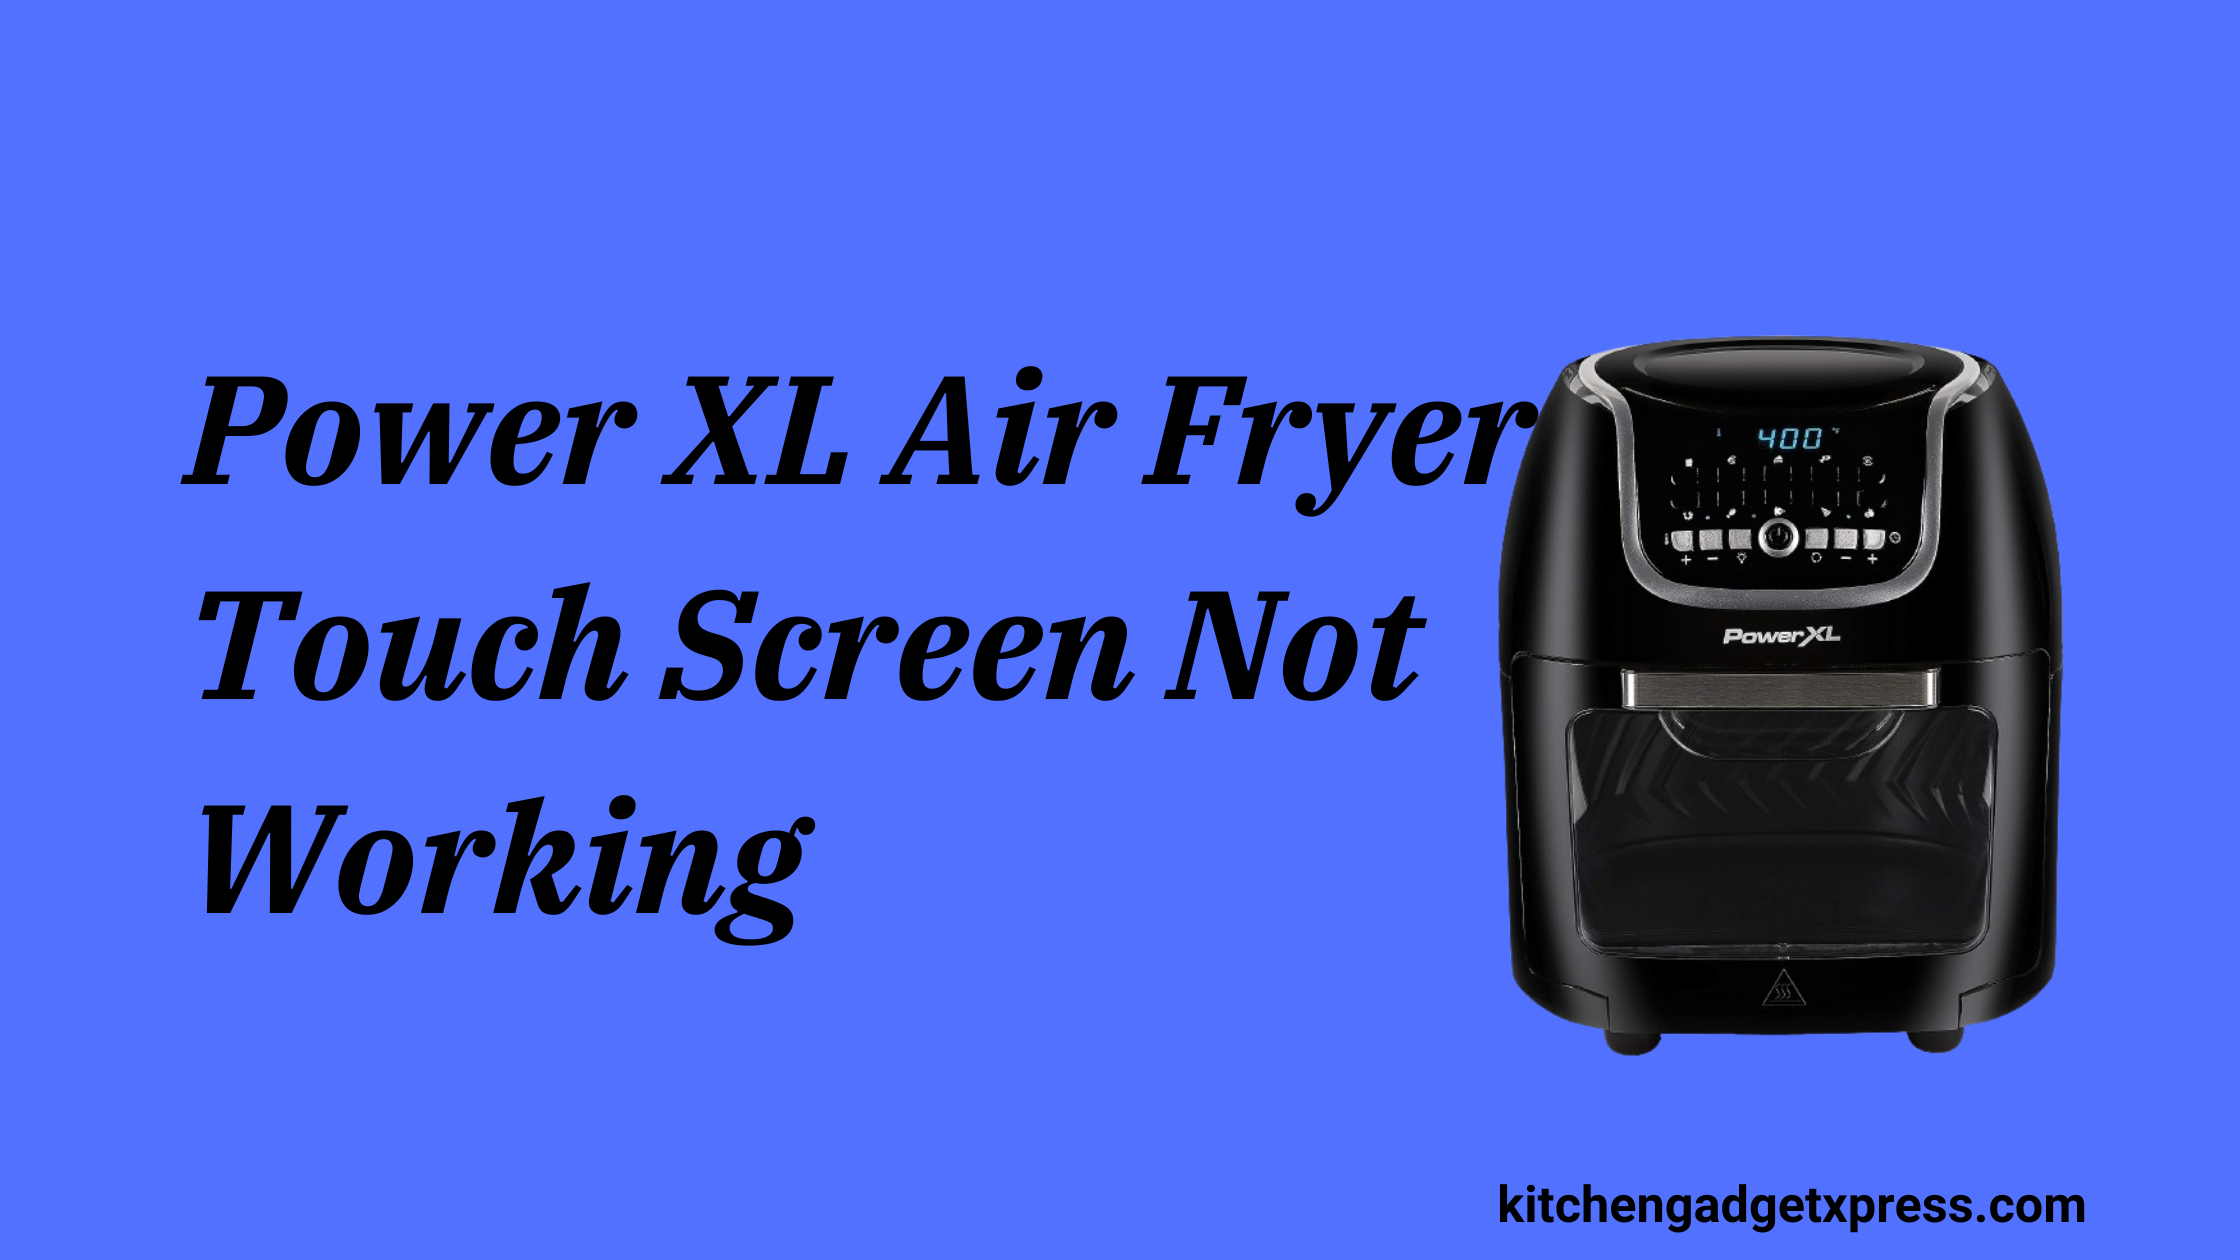 Power XL Air Fryer Touch Screen Not Working